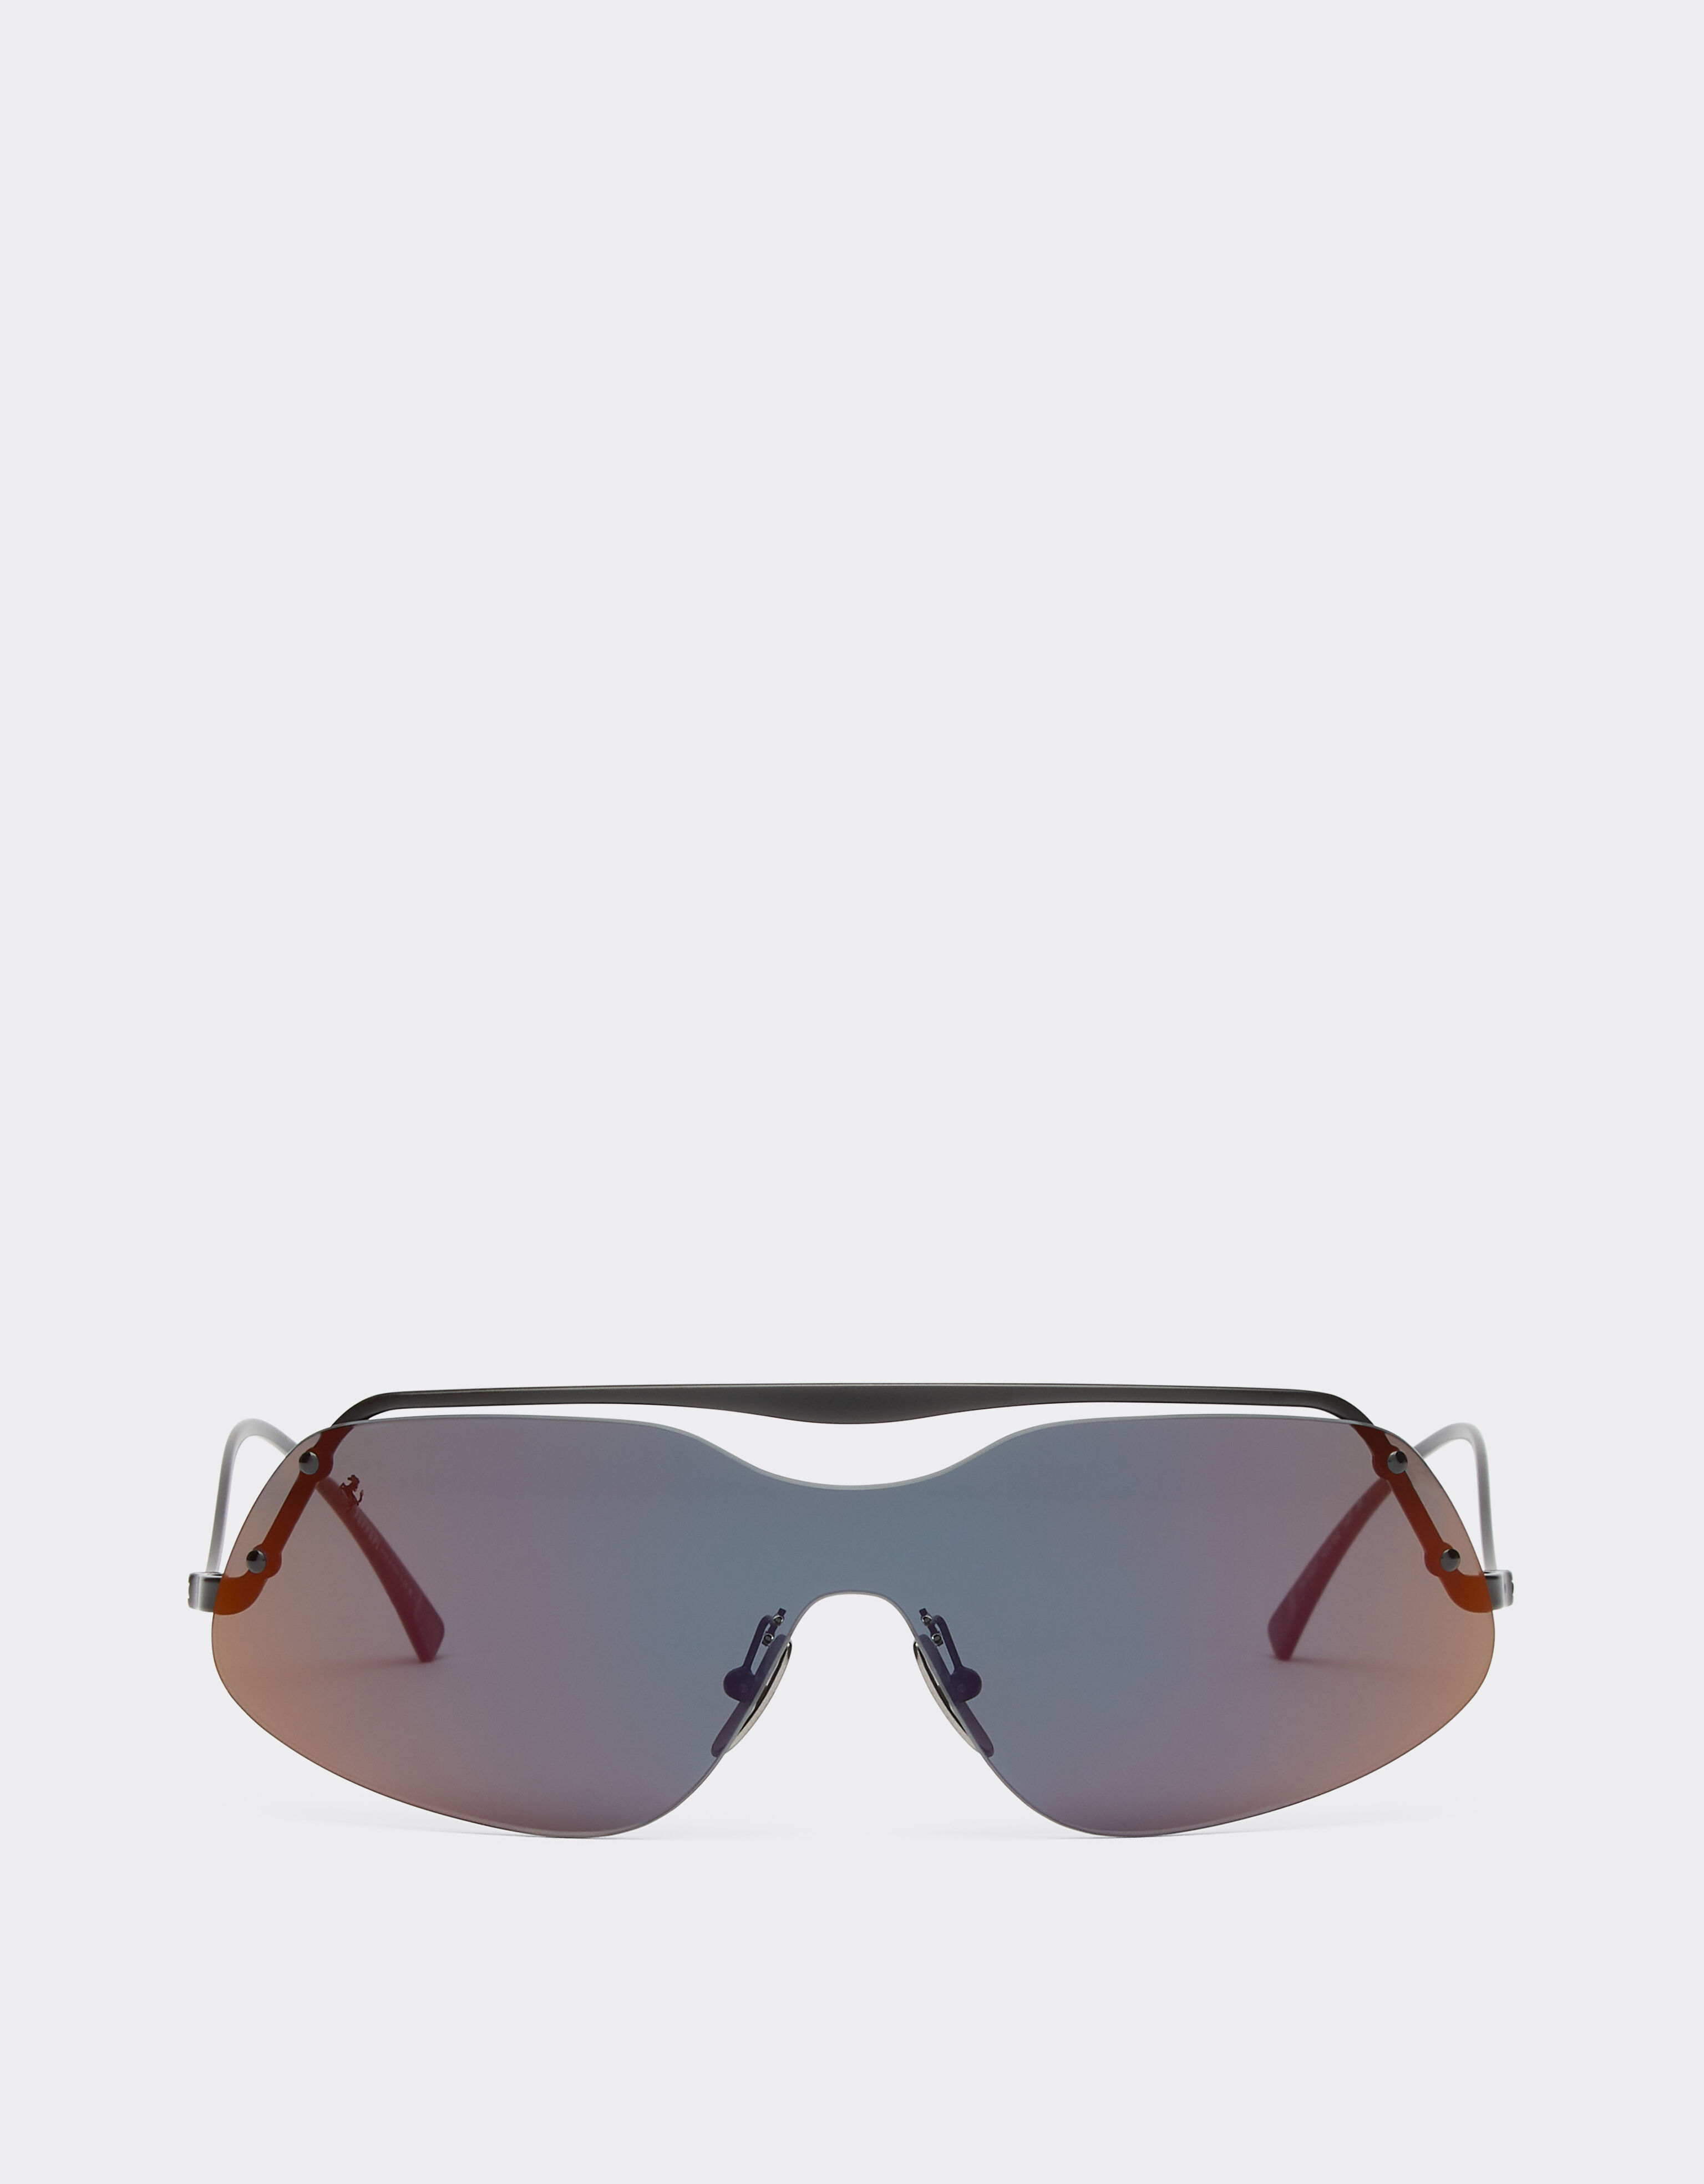 ${brand} Ferrari Sonnenbrille aus schwarzem Metall mit grauen Gläsern mit roter Verspiegelung ${colorDescription} ${masterID}